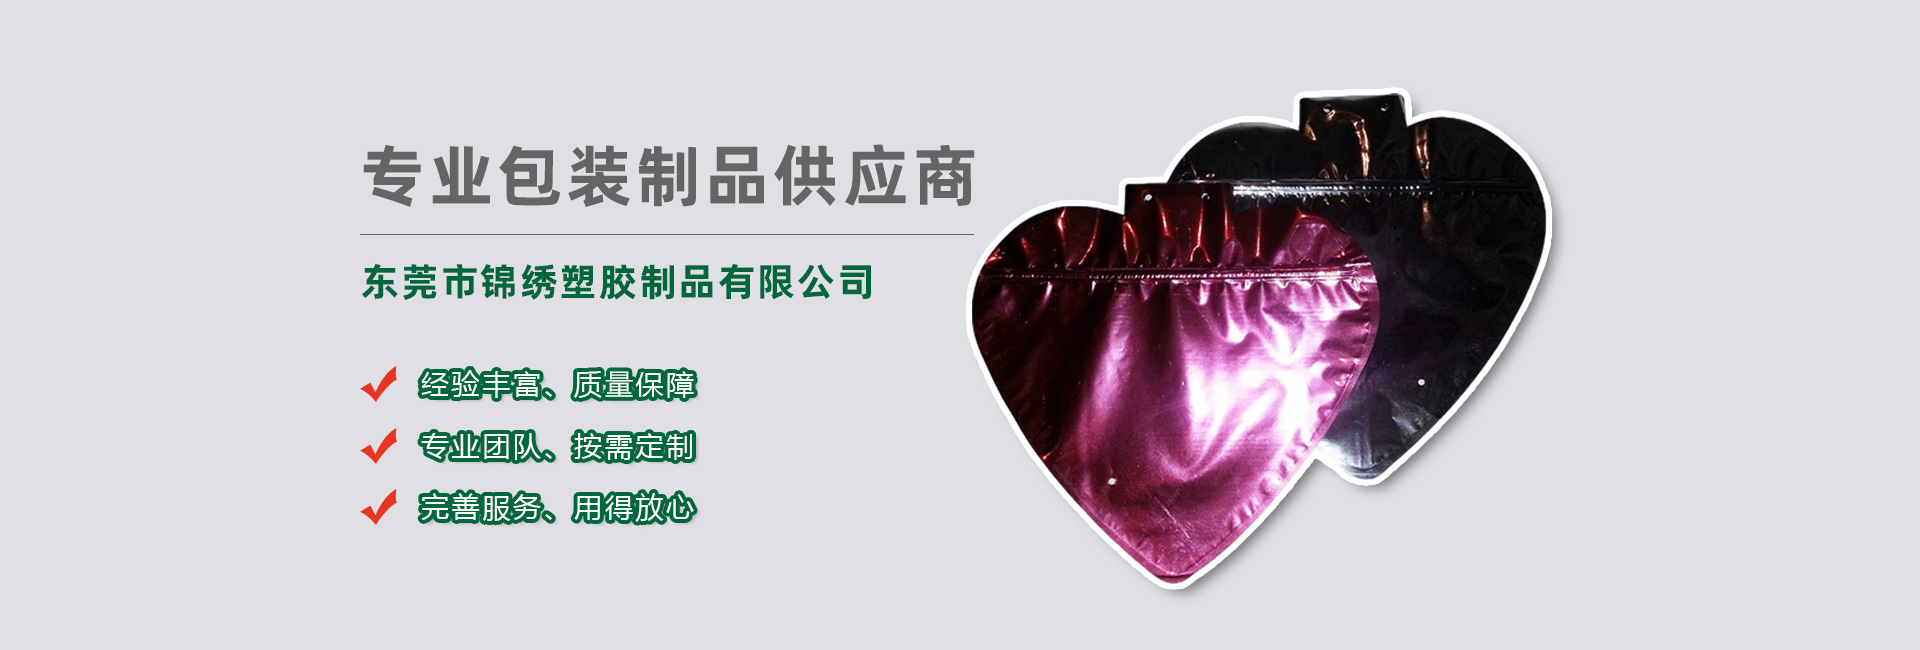 襄樊食品袋banner